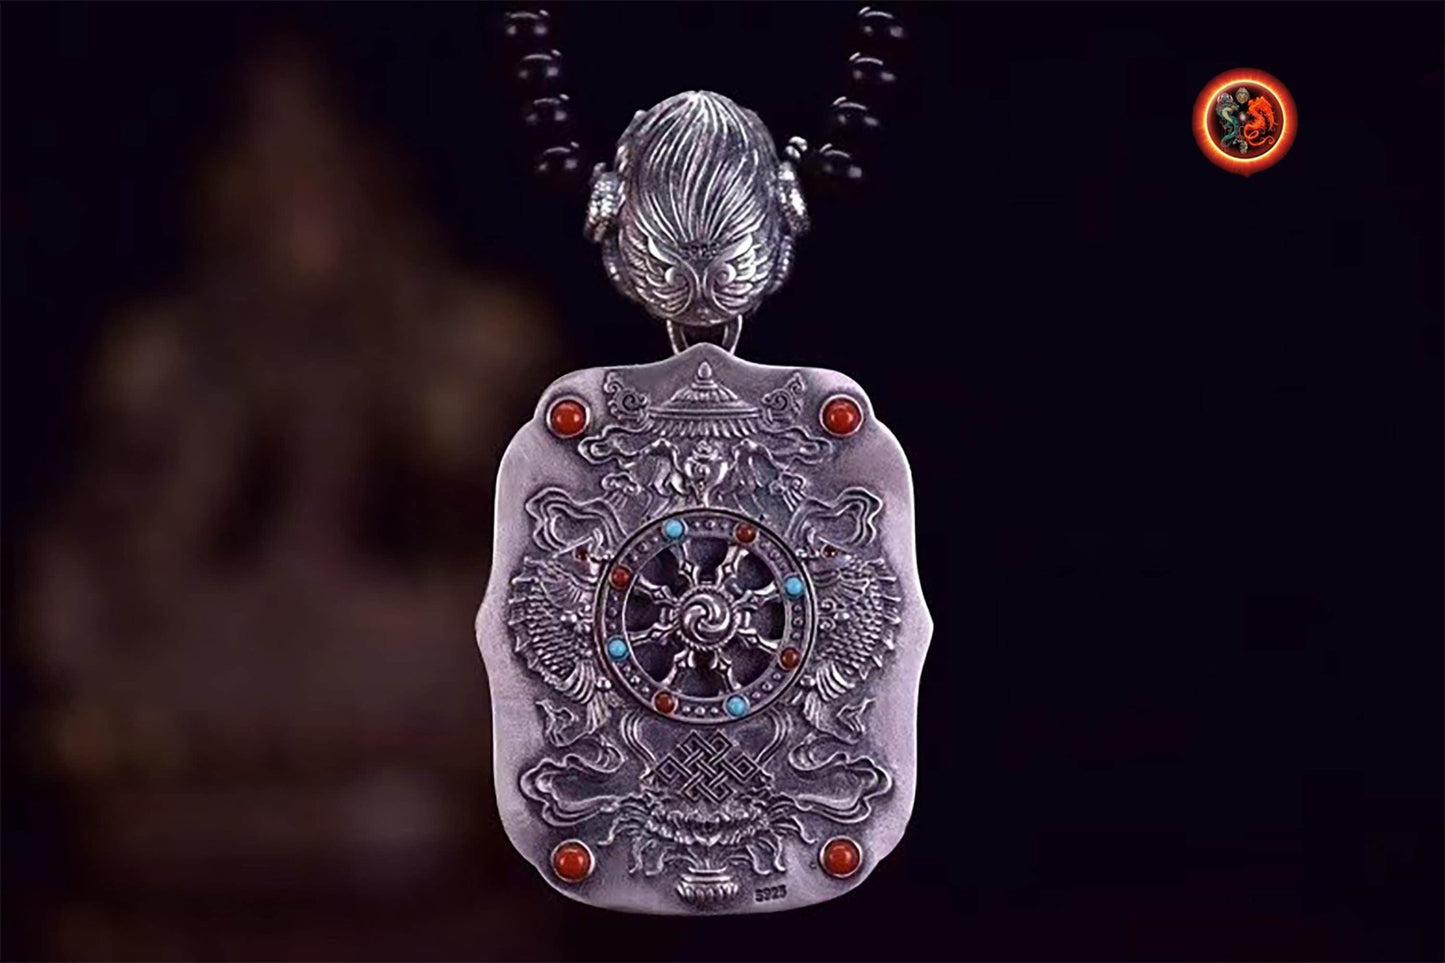 pendentif amulette de protection bouddhiste bouddha Tara Blanche mala de prière et méditation 108 perles, argent 925 or 18K bélière Garuda - obsidian dragon